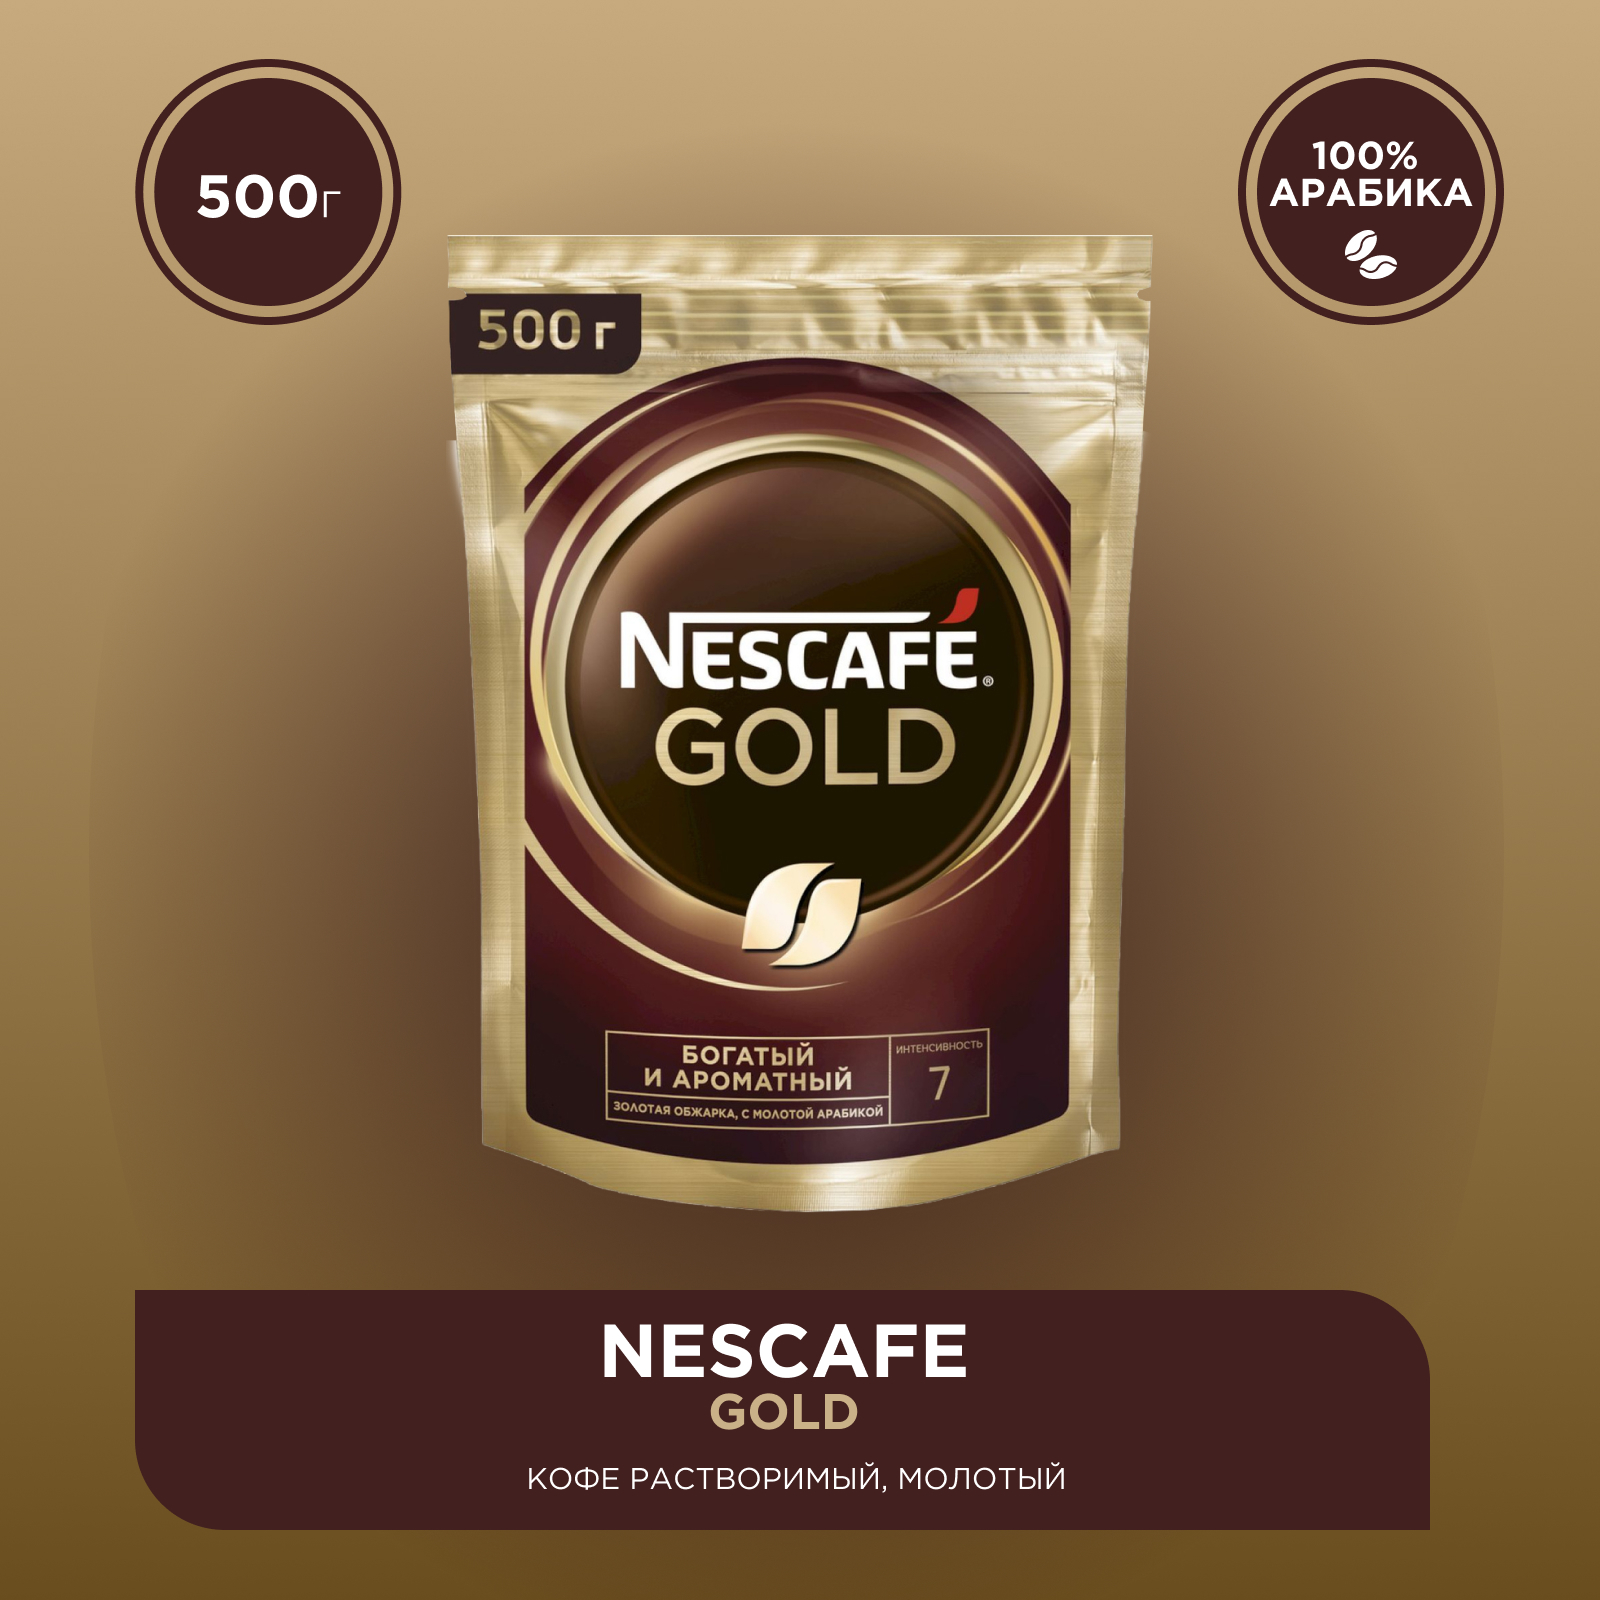 Купить кофе голд 500 гр. Nescafe Gold 750 гр. Нескафе Голд 900 гр. Нескафе Голд 500 гр. Нескафе Голд 320 гр.